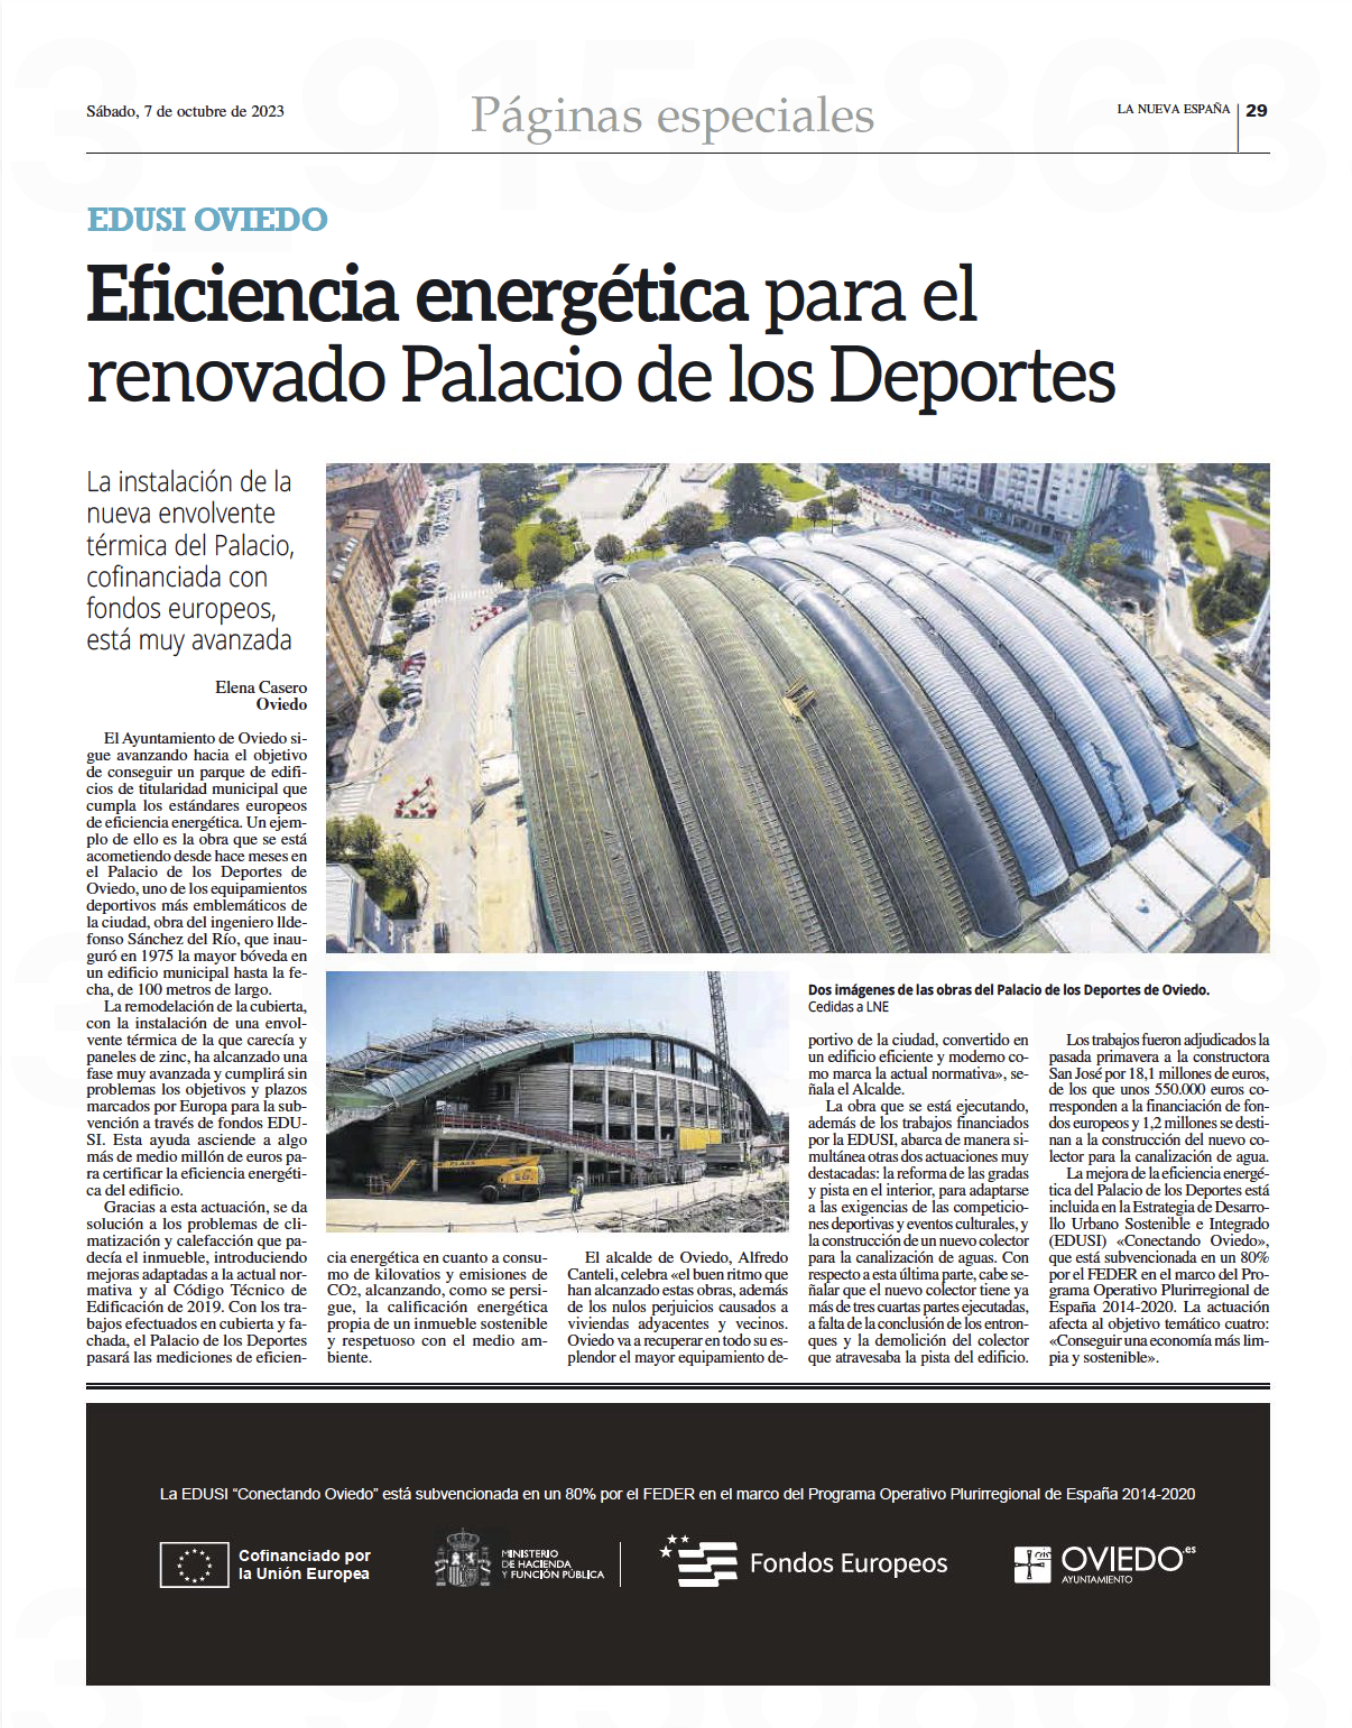 Eficiencia energética para el renovado Palacio de los Deportes